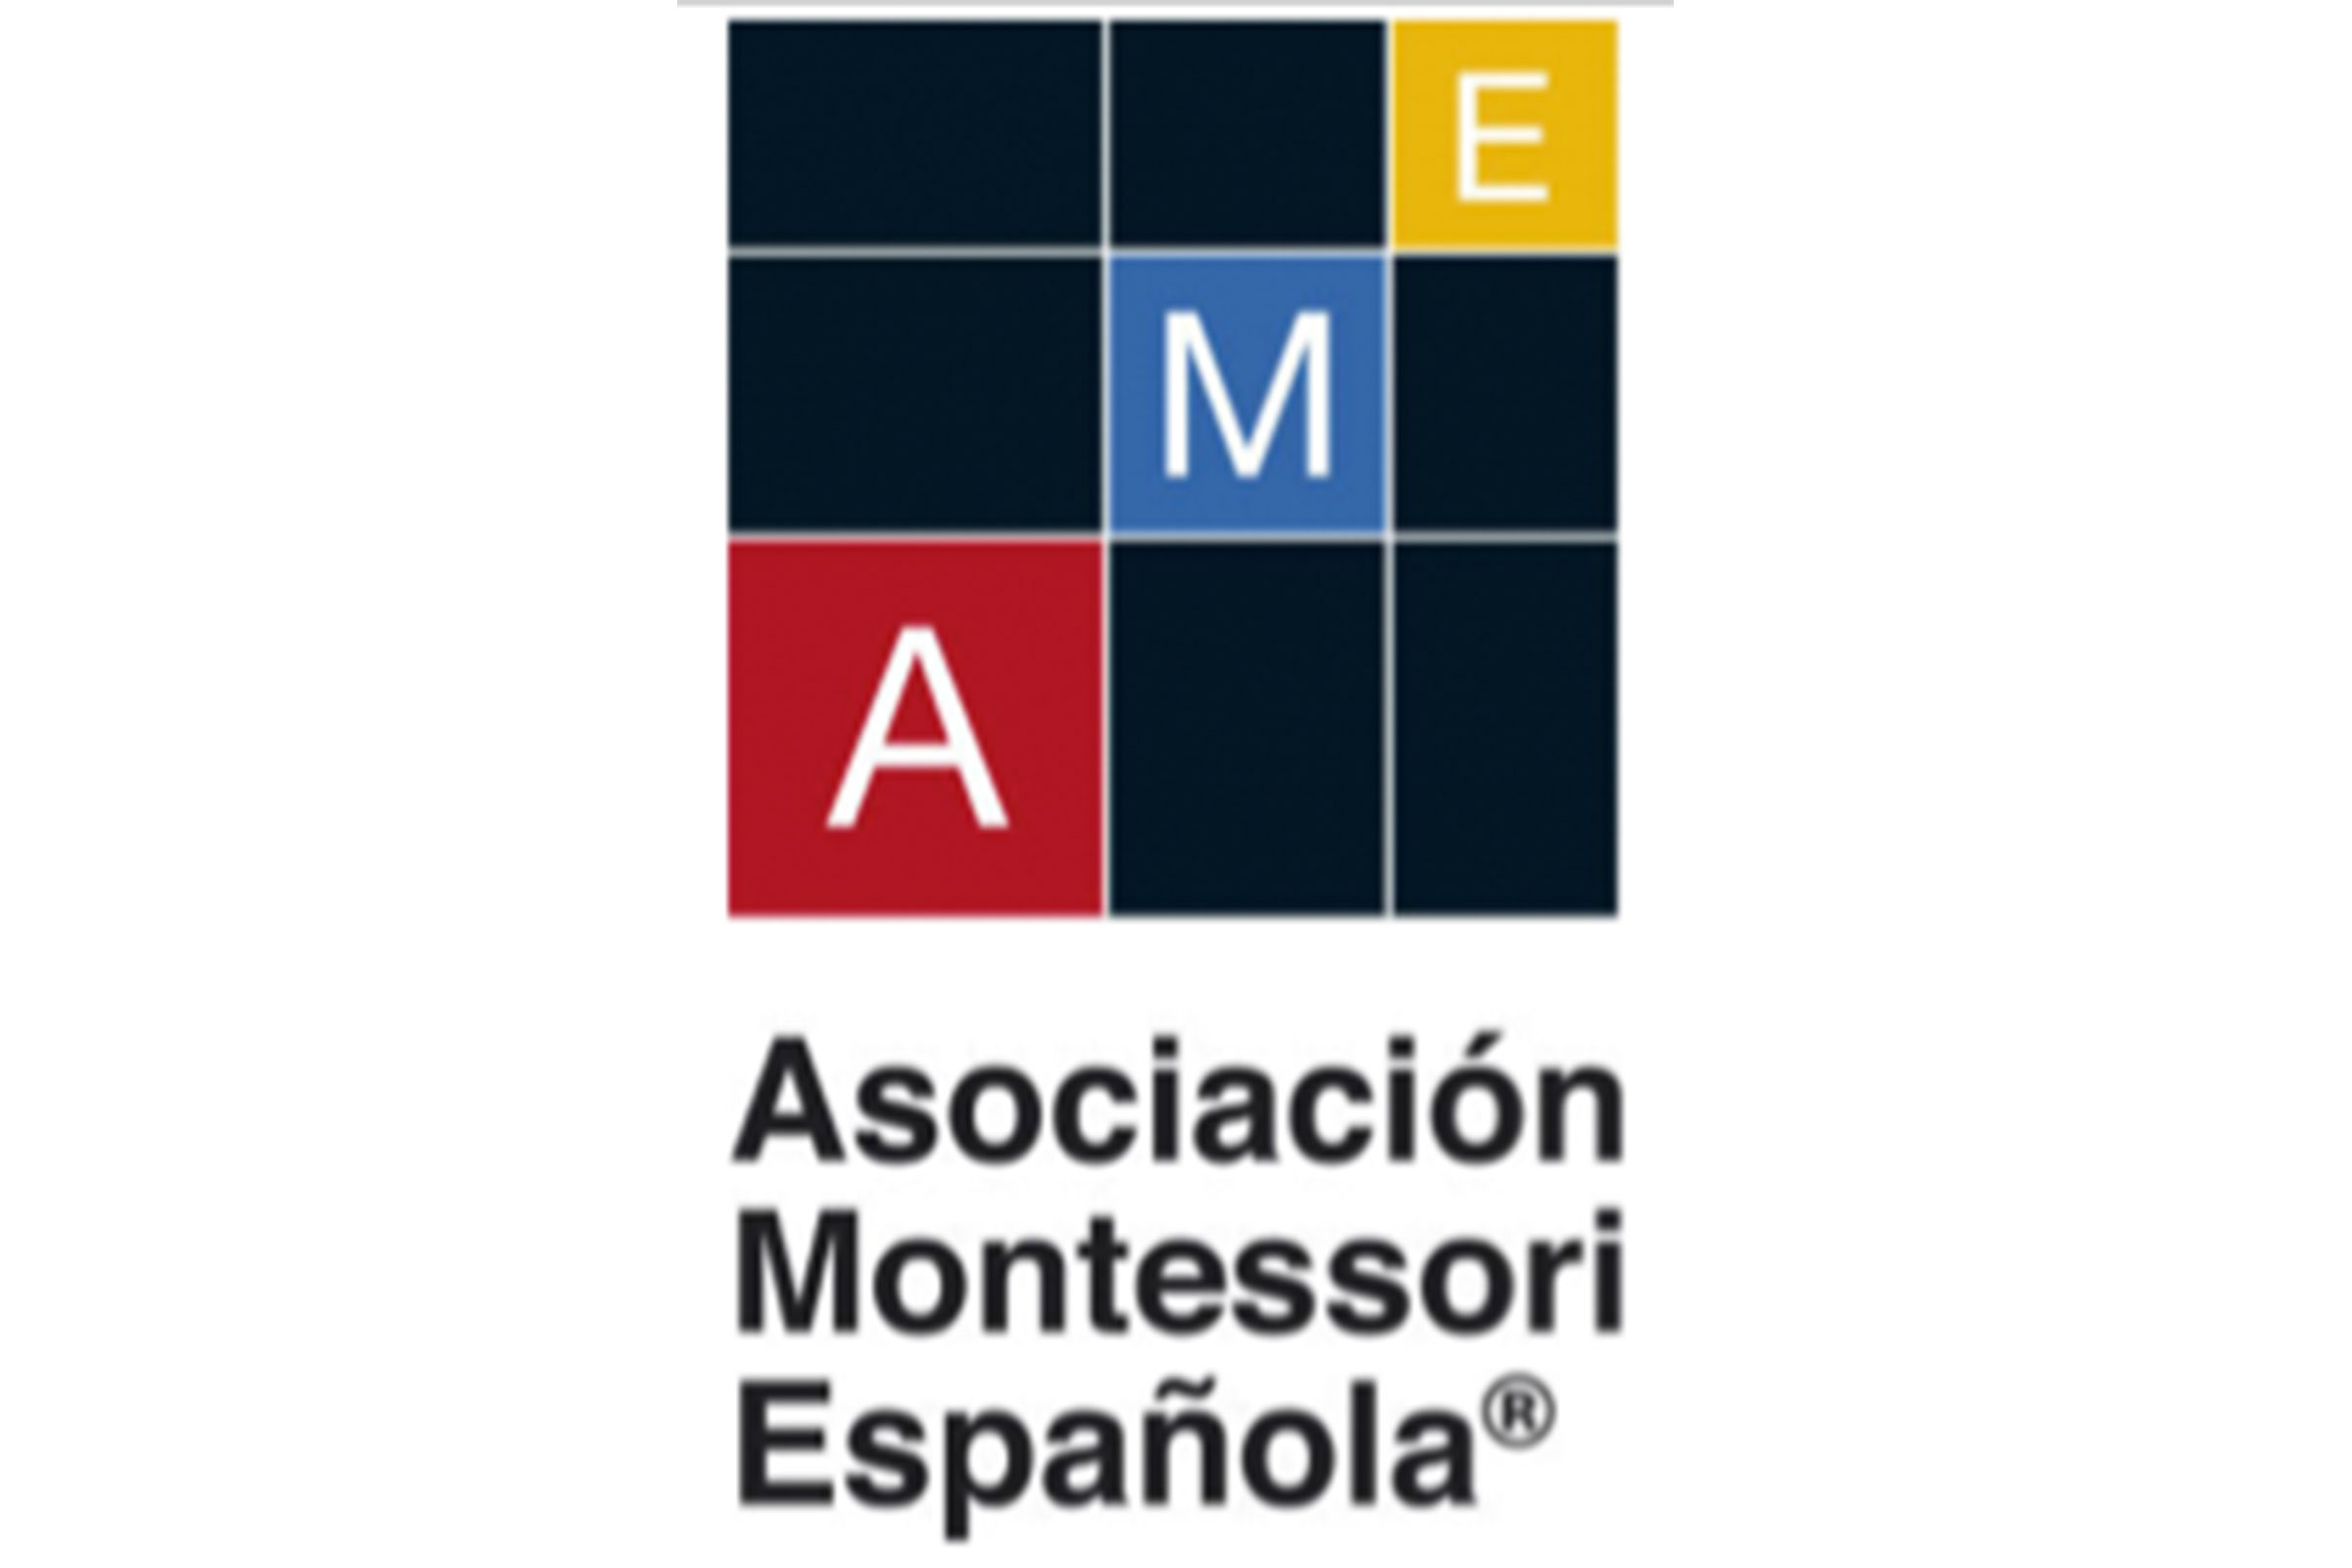 Asociación Montessori Española logo